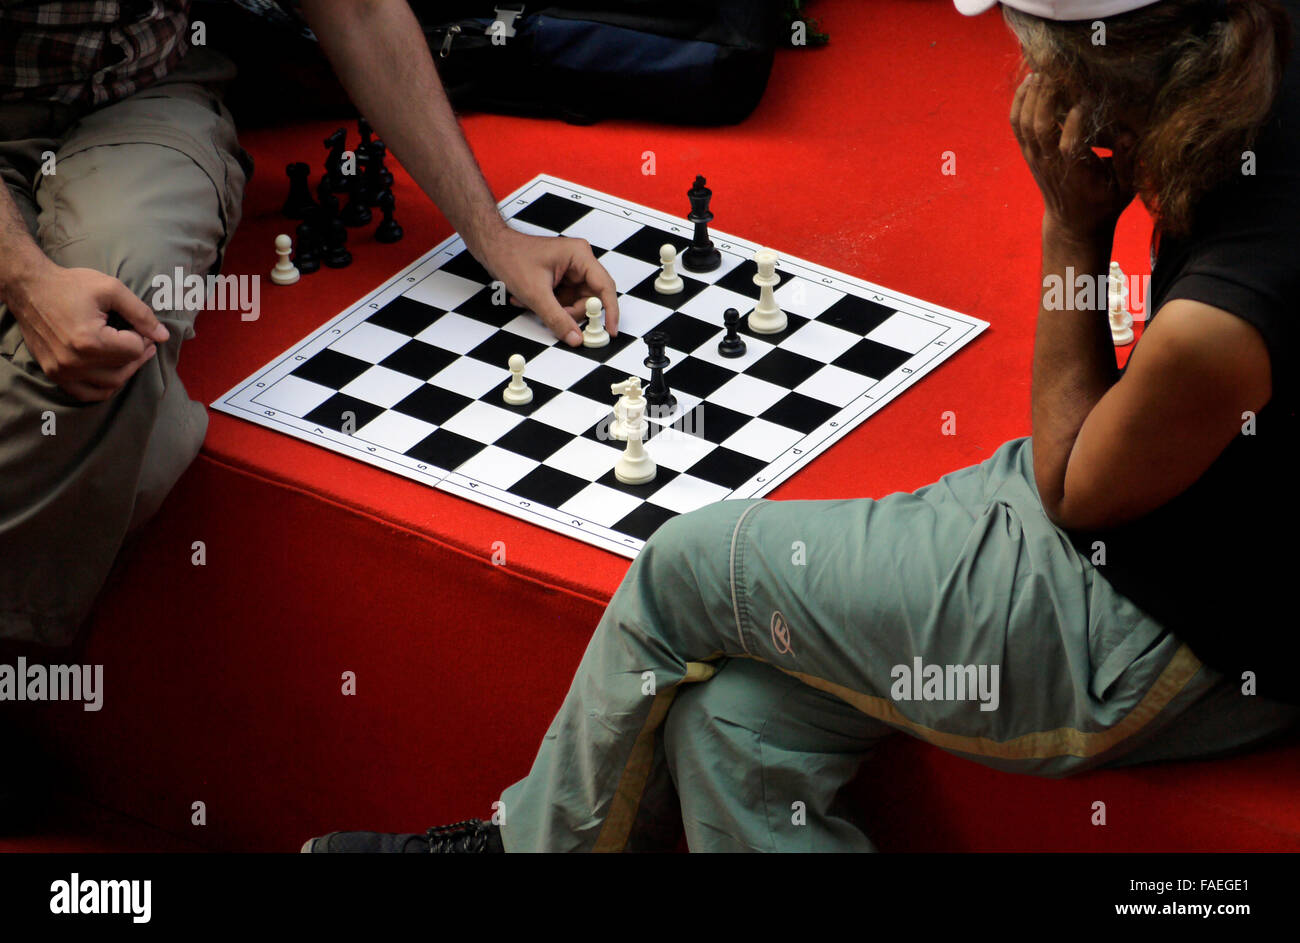 Zwei Männer mit einer Partie Schach, die im öffentlichen Raum im Freien gespielt wird Stockfoto